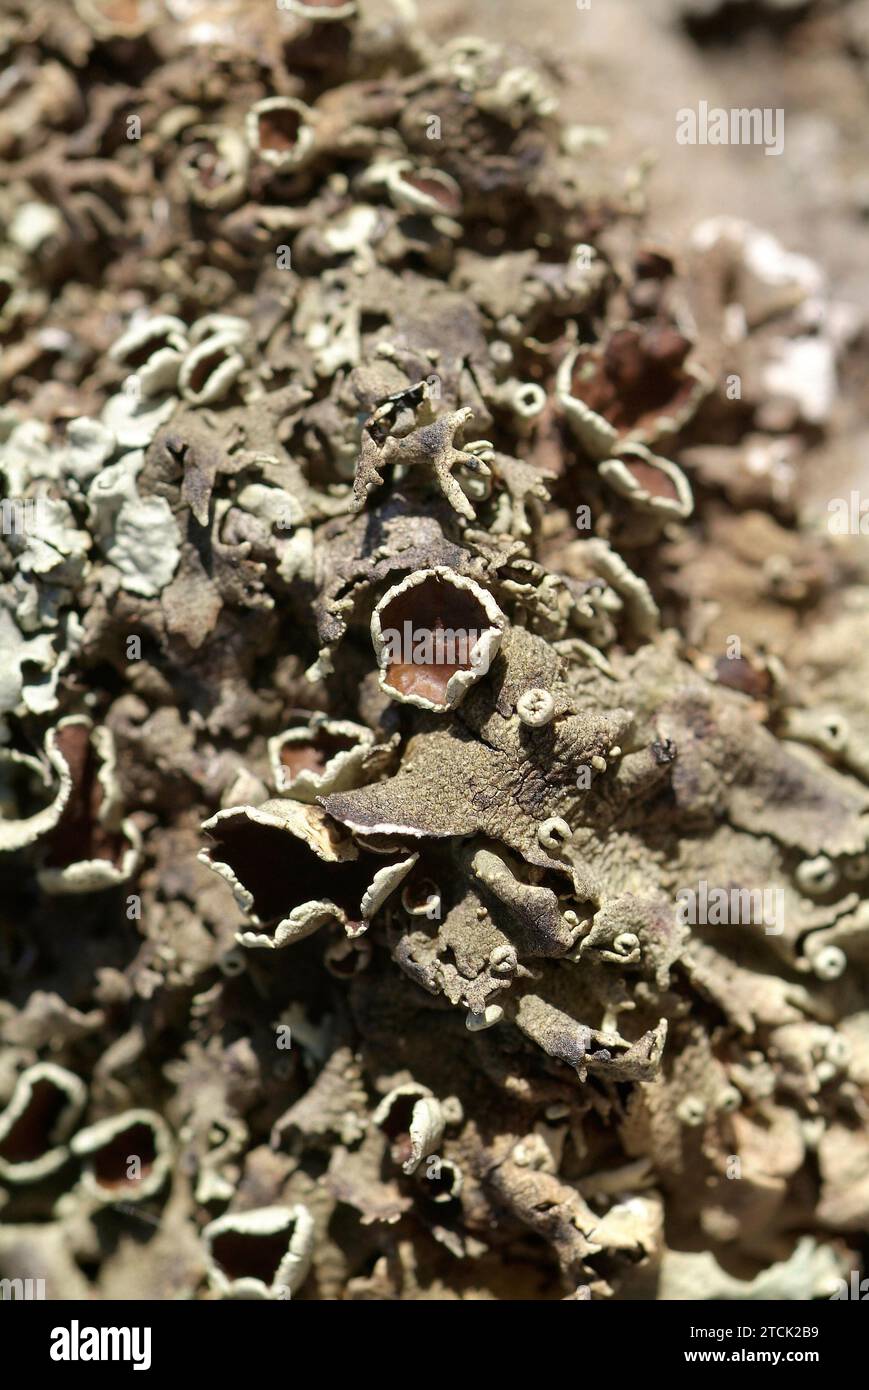 Xanthoparmelia conspersa o Parmelia conspersa è un lichene foglioso. Thallus e apotecia dettaglio. Questa foto è stata scattata a la Albera, provincia di Girona, Foto Stock